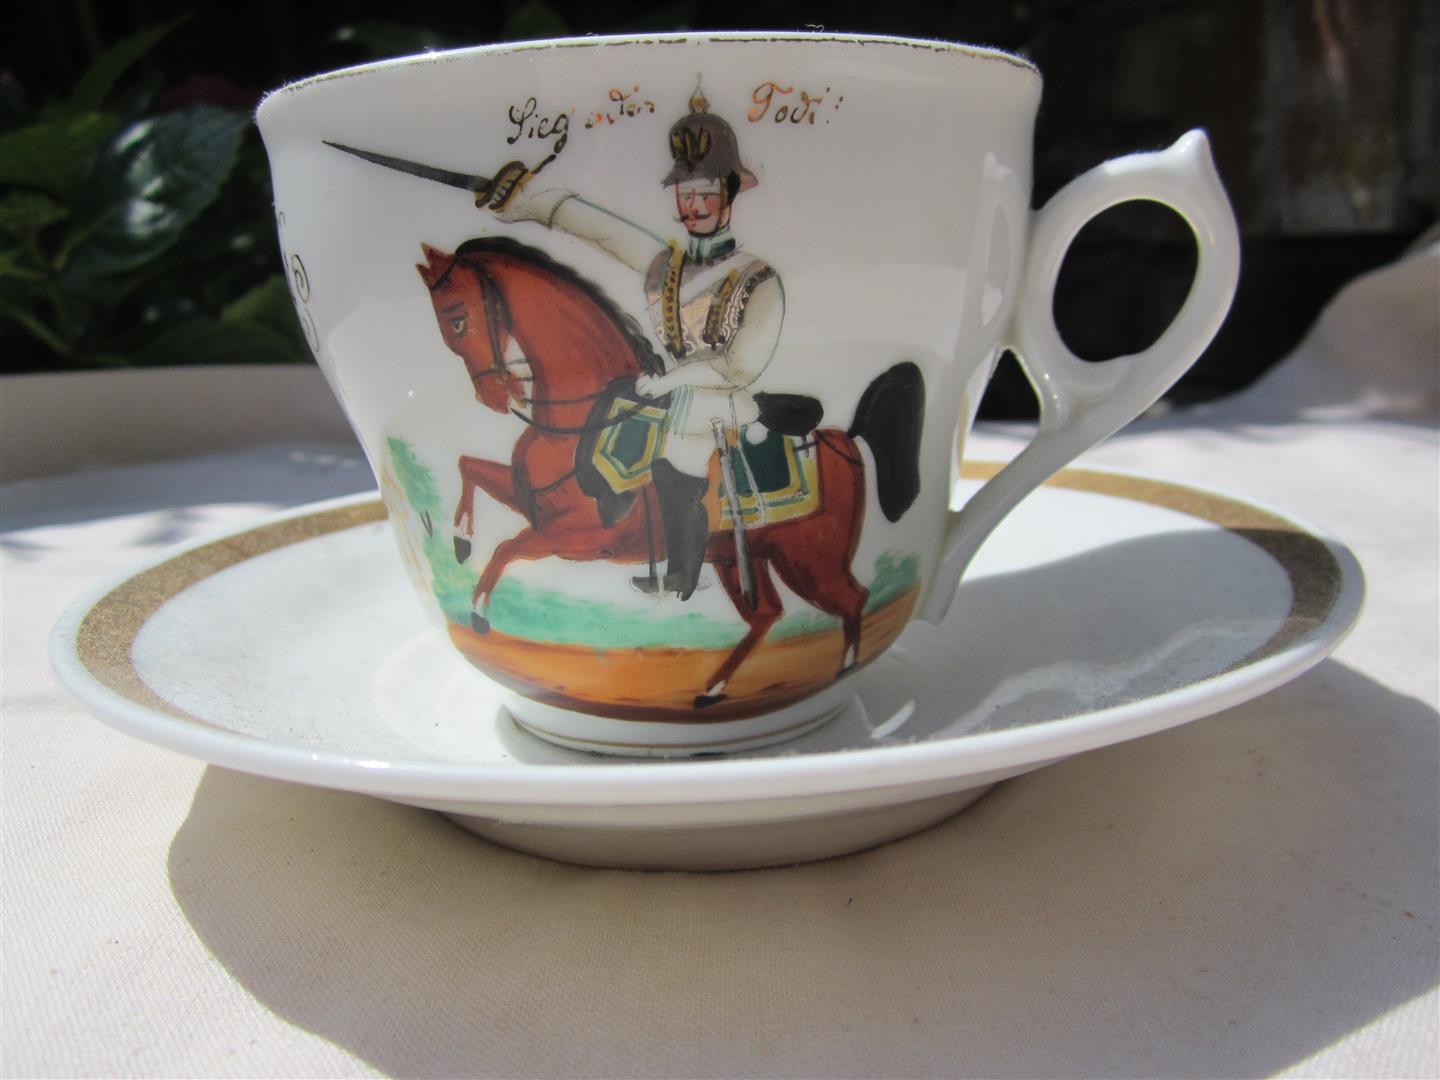 1884 German Tea Cup and Saucer